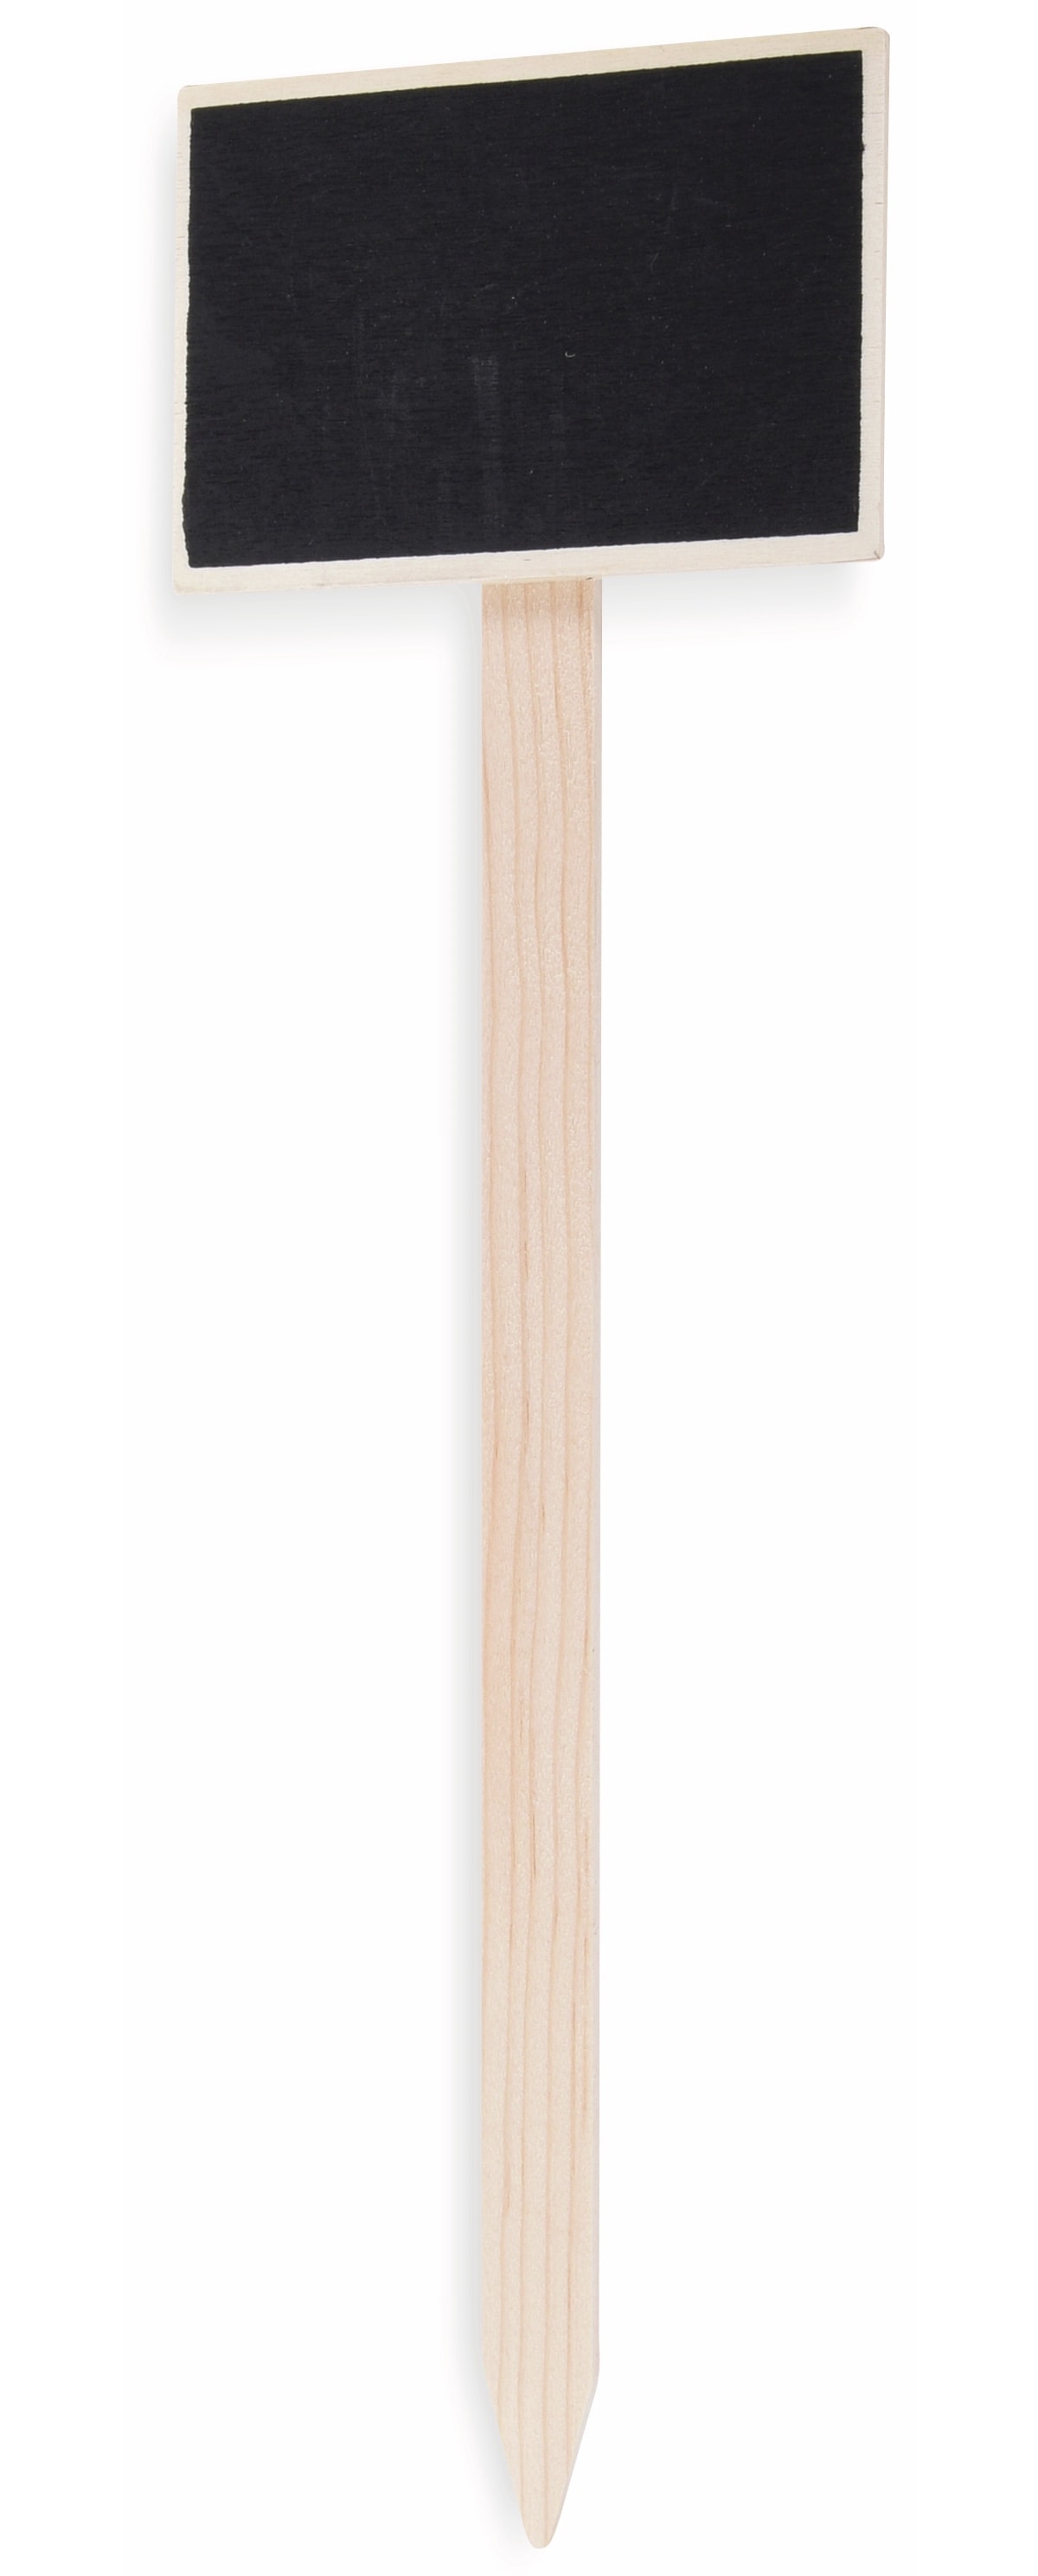 Pflanzentafel mit Stab, 98x66, aus Holz, 2 Stück, inkl. 1 Kreidestück